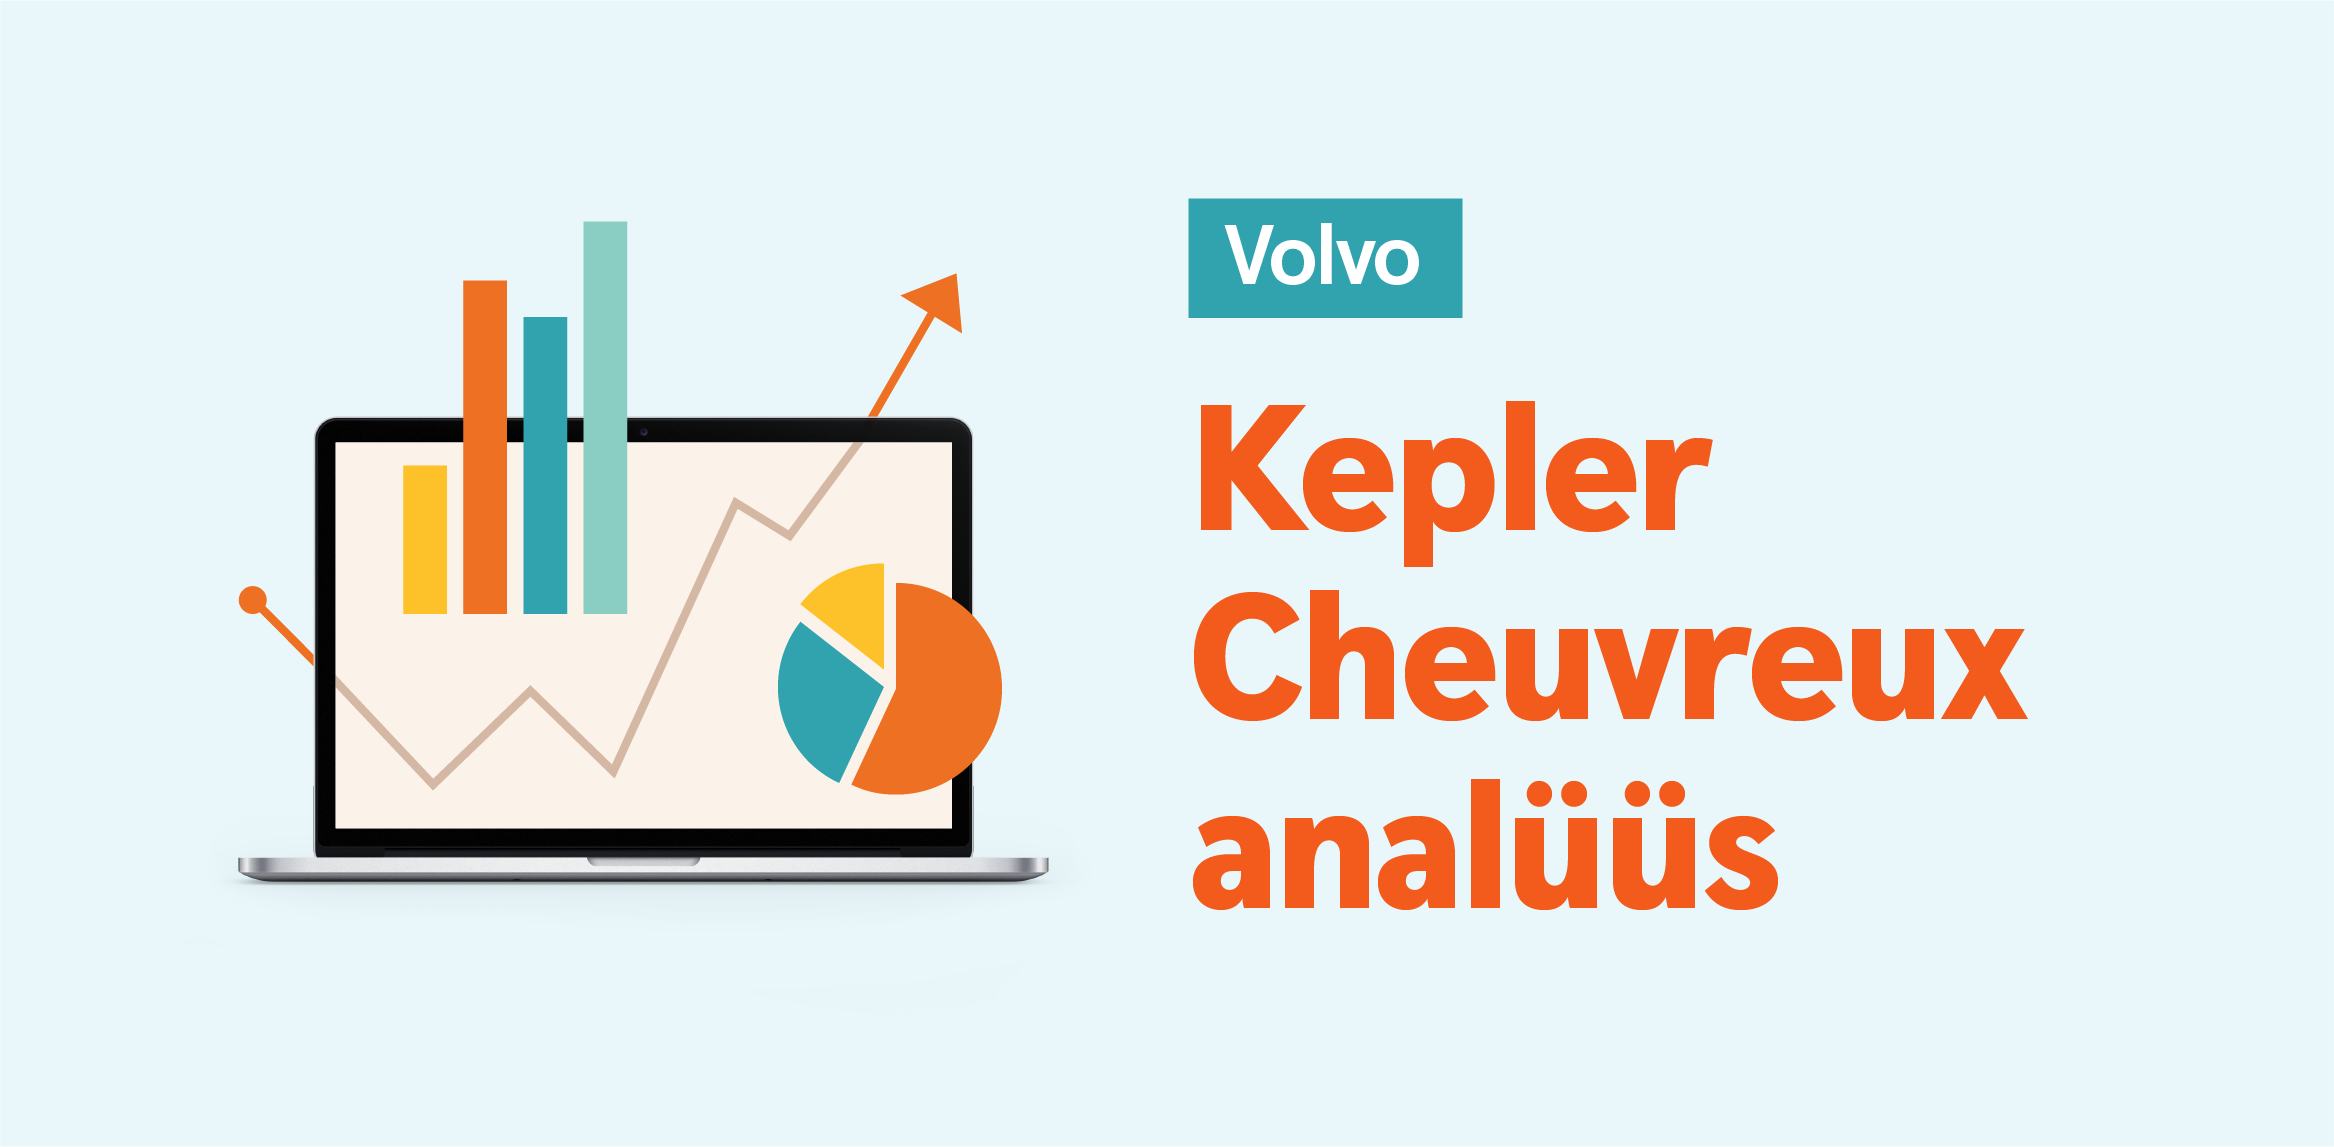 Kepler Cheuvreux видит возможности для роста акций Volvo